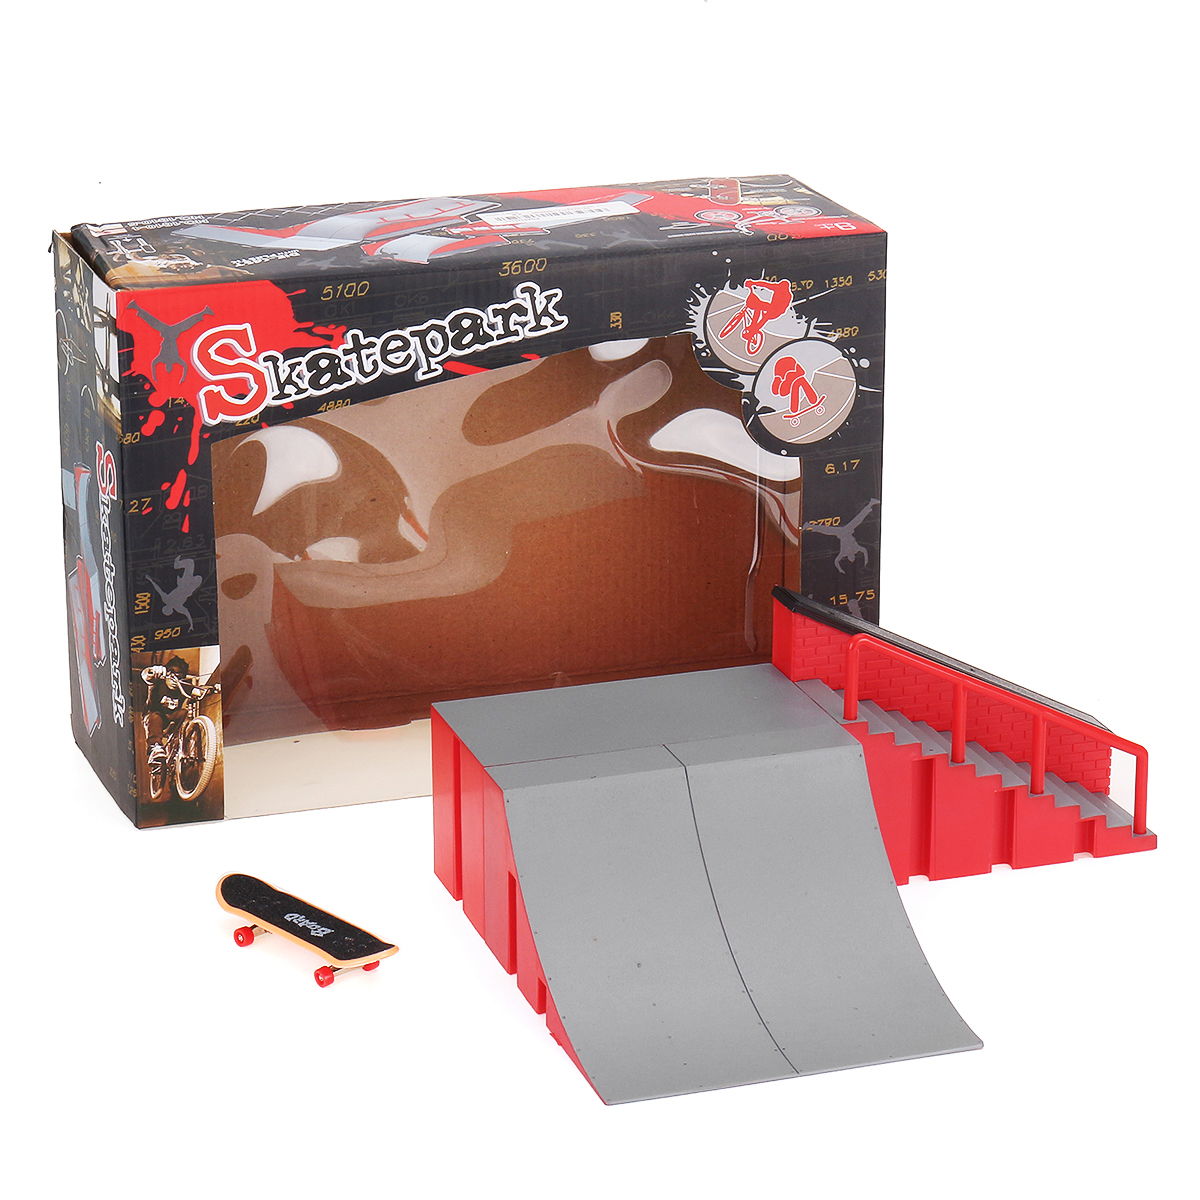 

Mini Fingerboard Finger Skateboard & Skate Ramp Skate Park Play Set Kids Toy